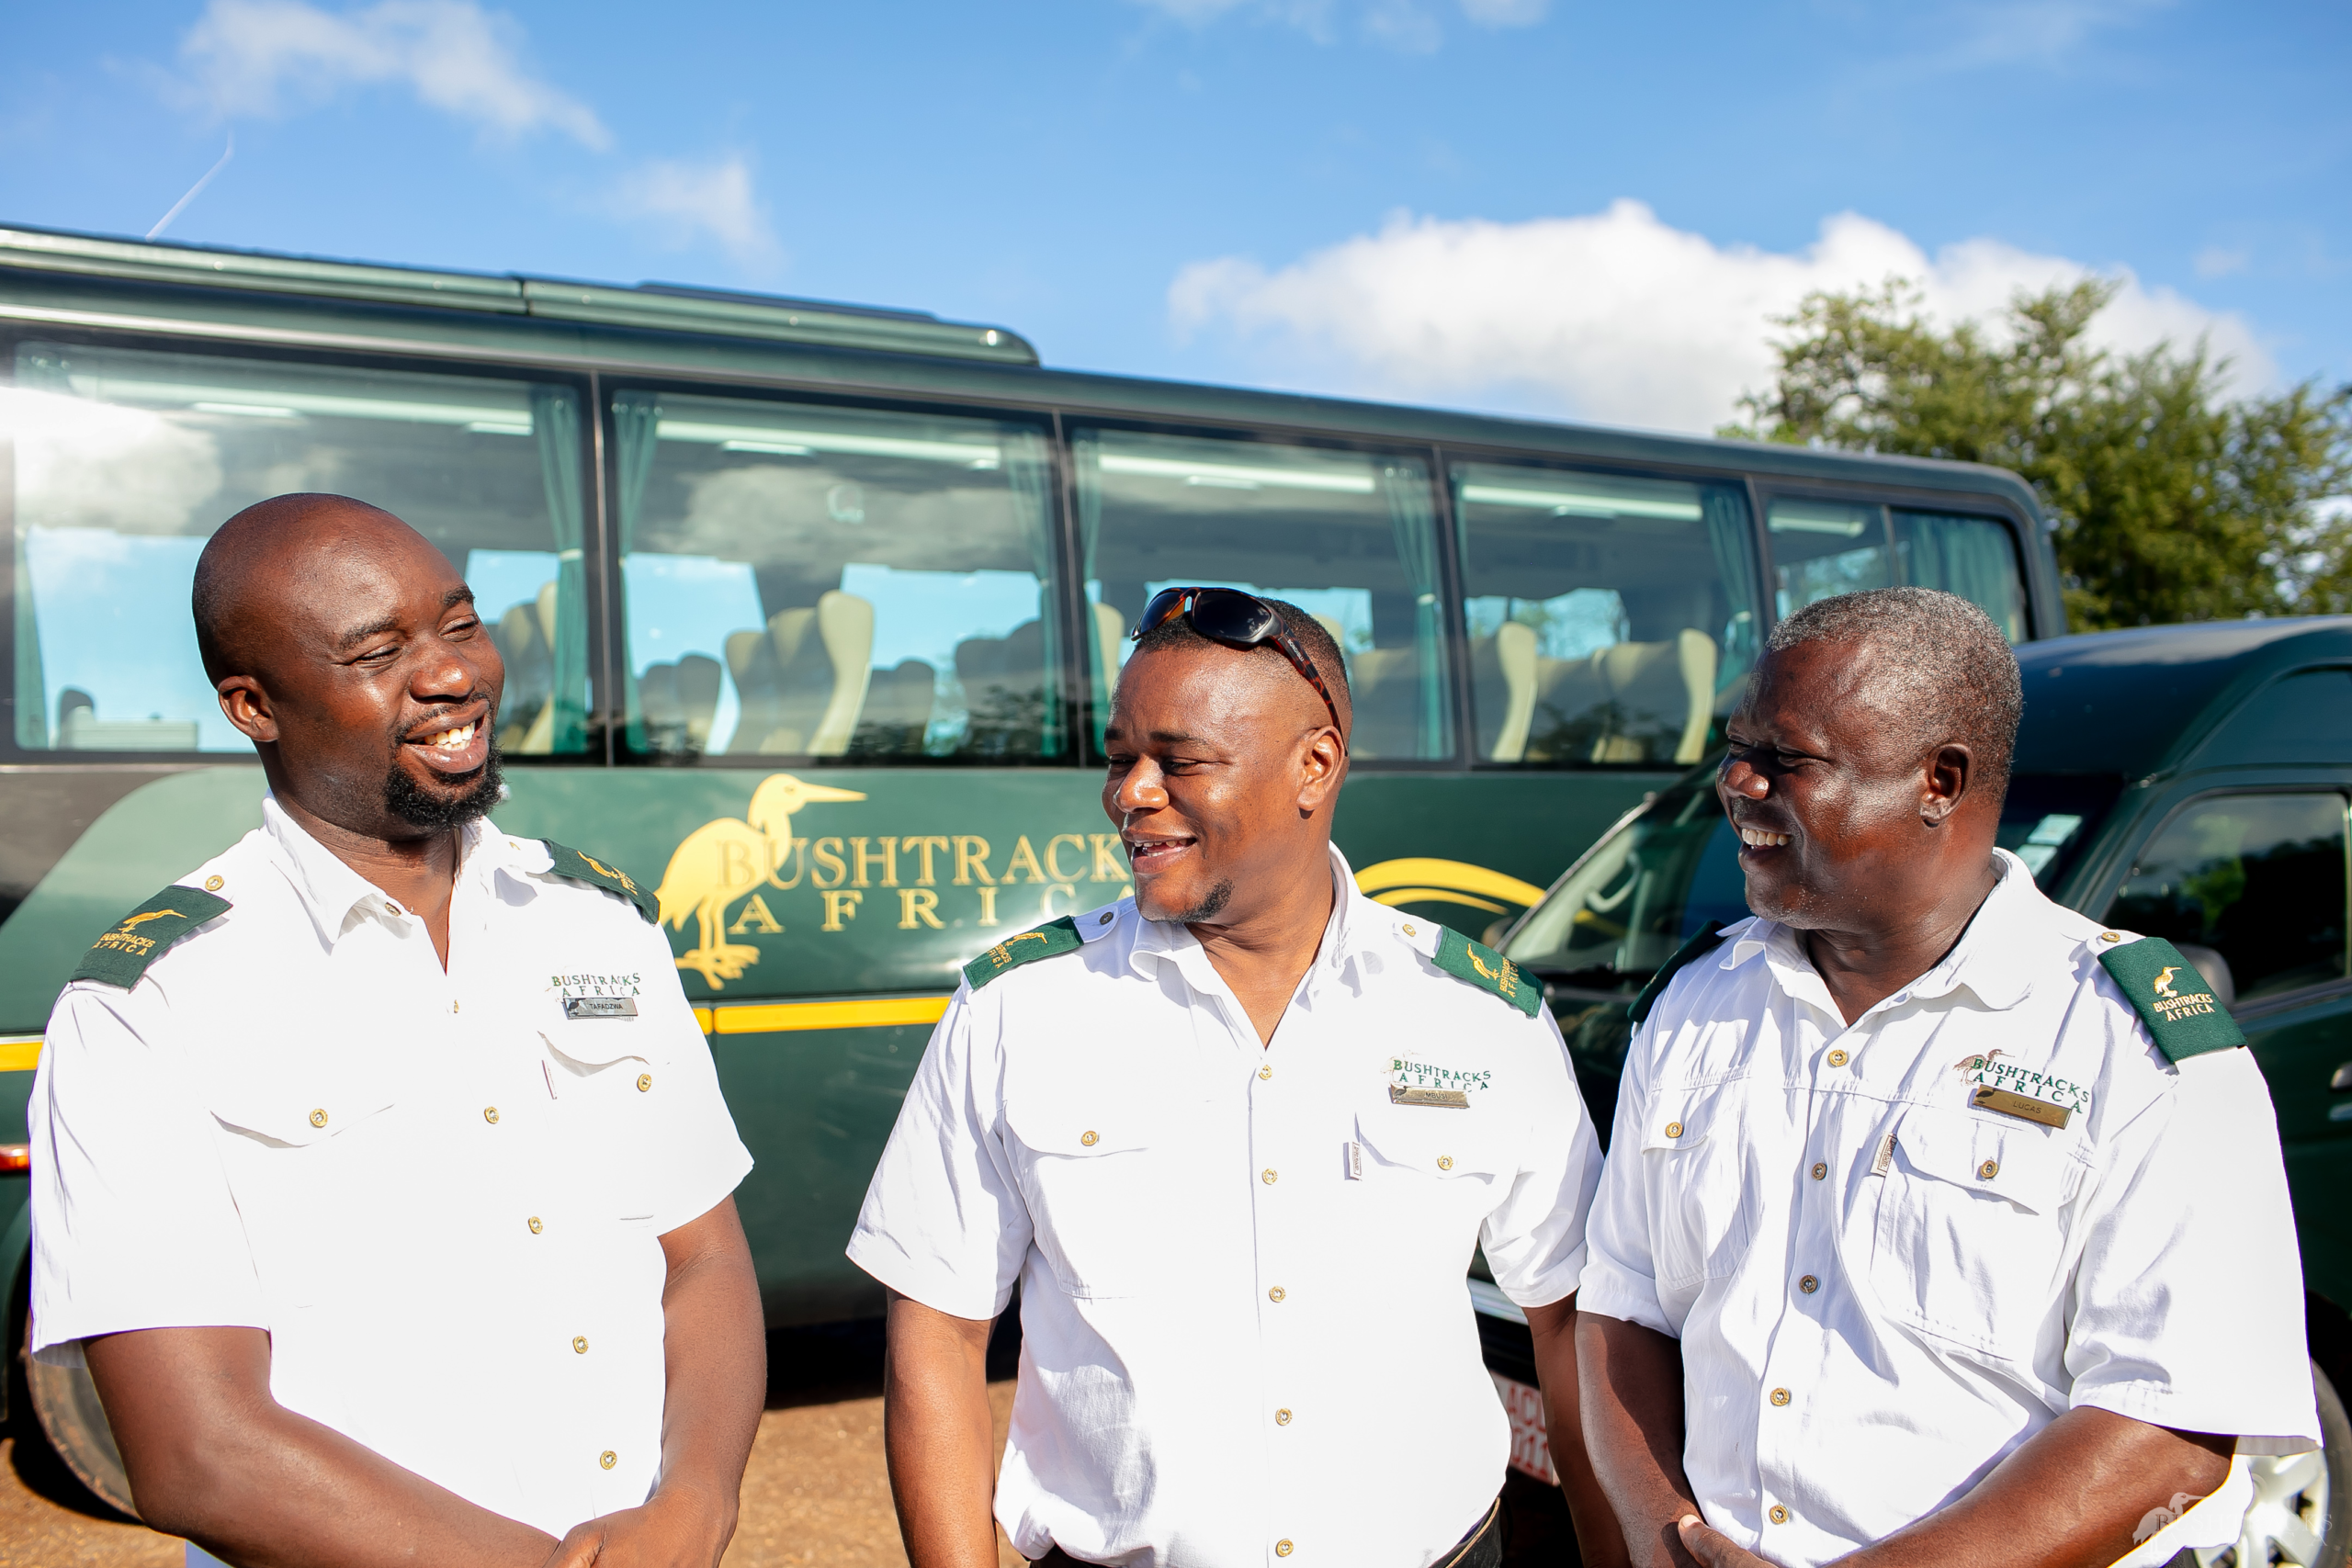 Tour drivers Photo Credit: The Victoria Falls Regional Tourism Association